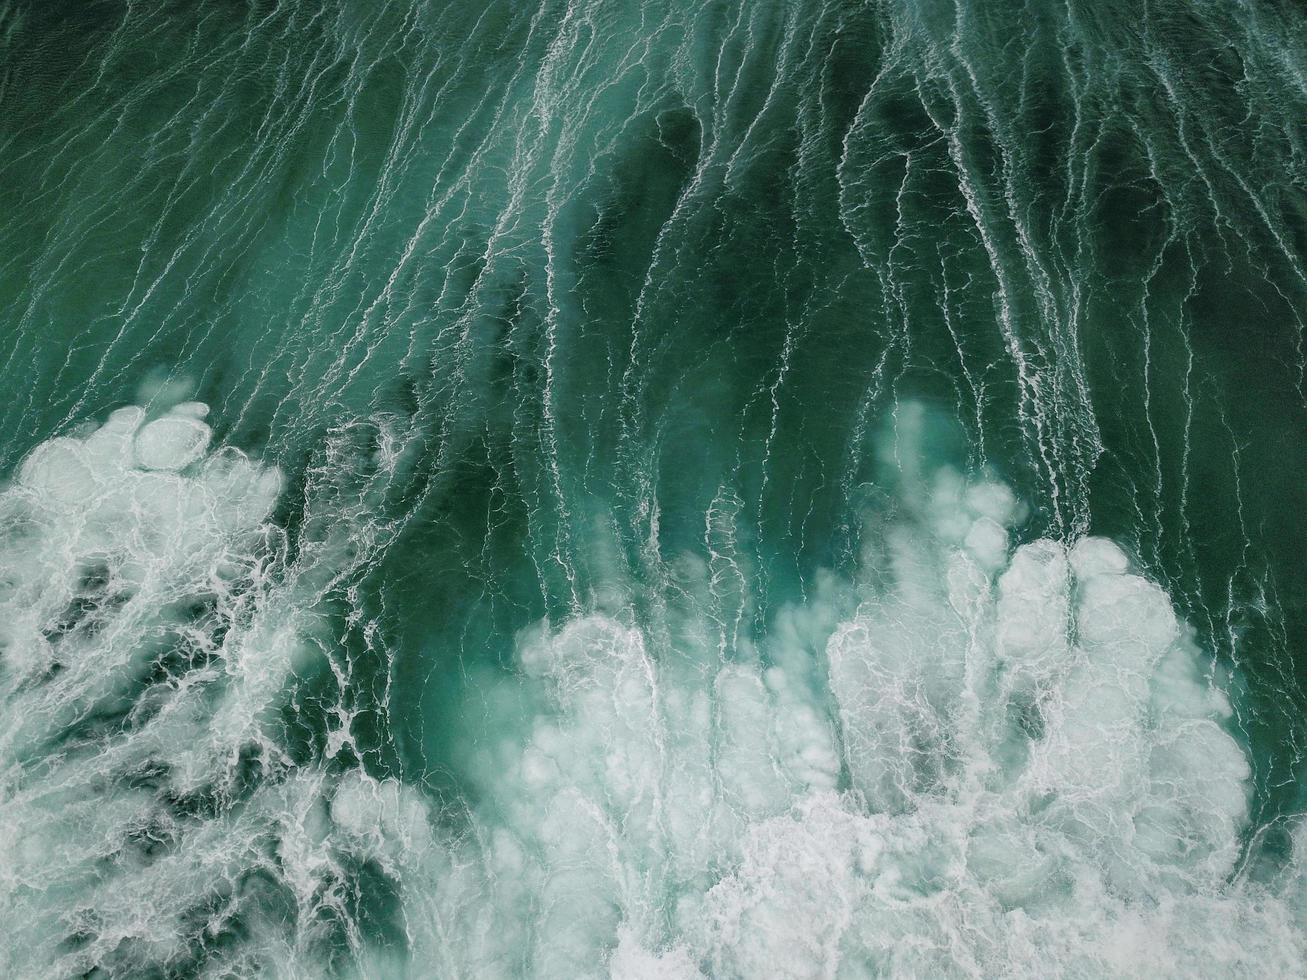 acqua dell'oceano bianco e verde foto